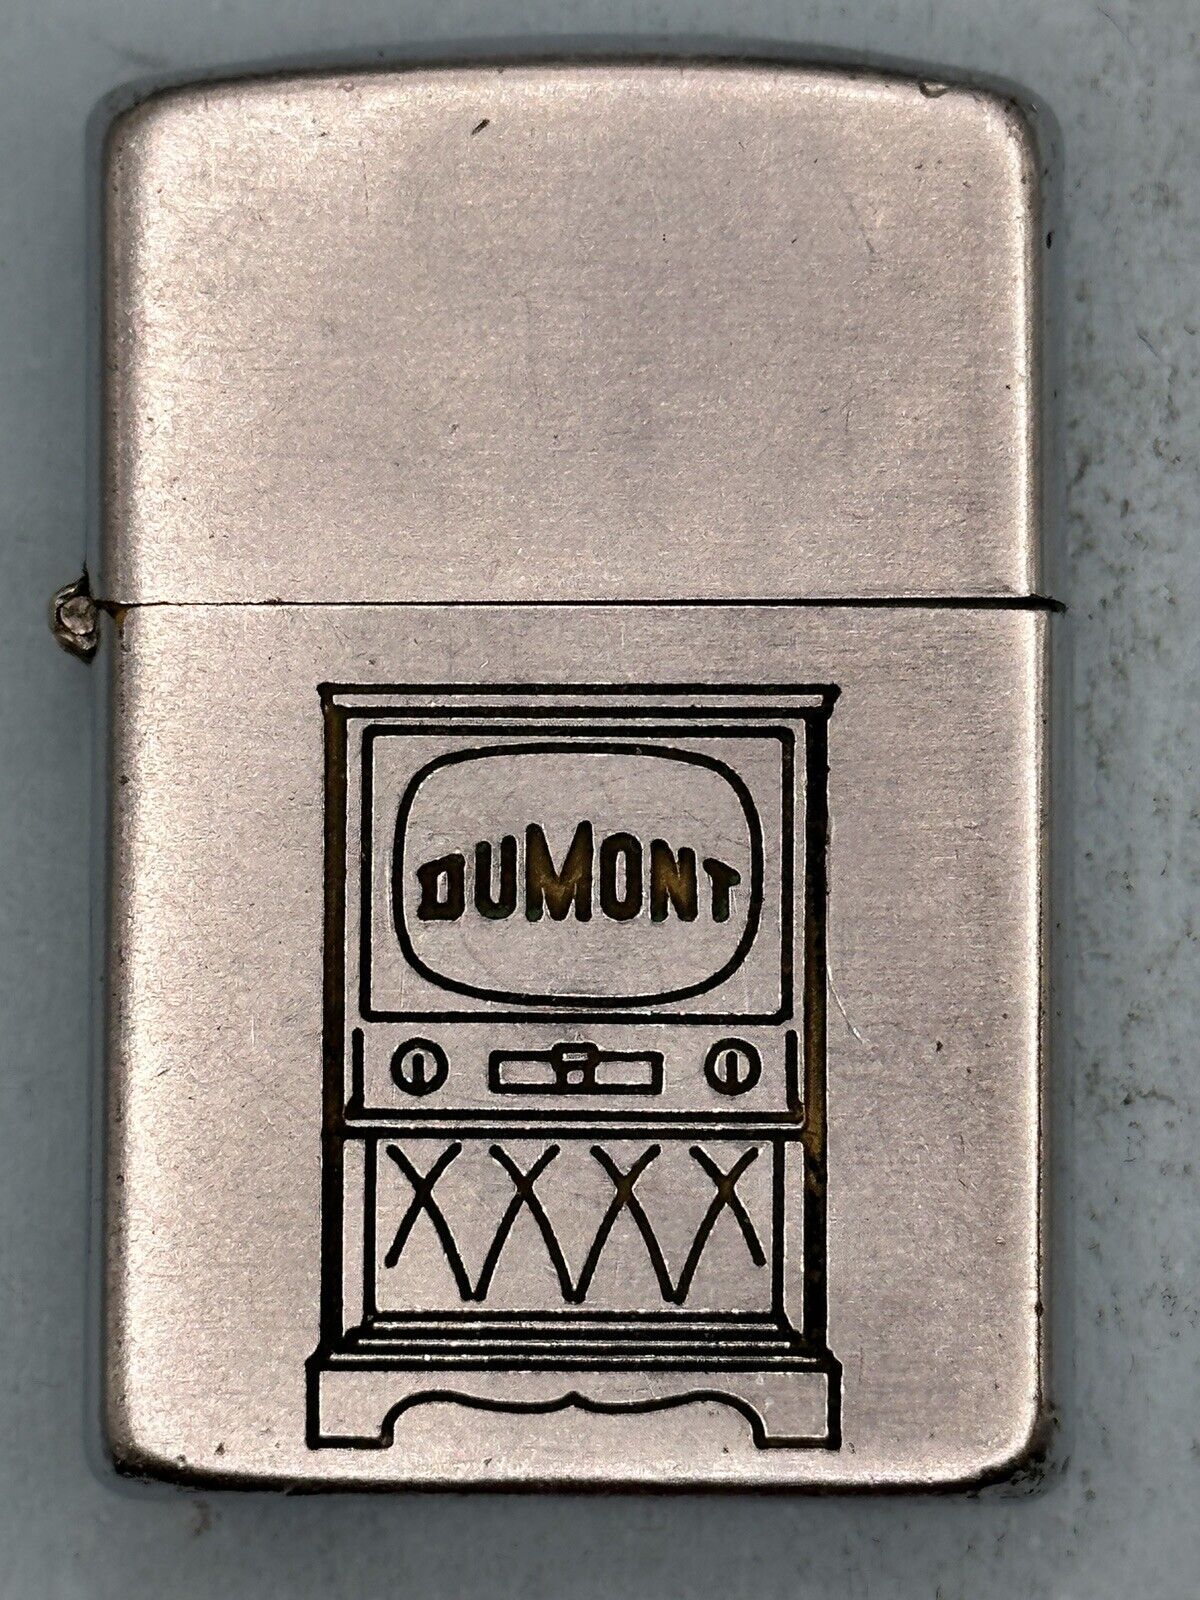 Vintage 1950-1957 Dumont TV Network Advertising Chrome Zippo Lighter